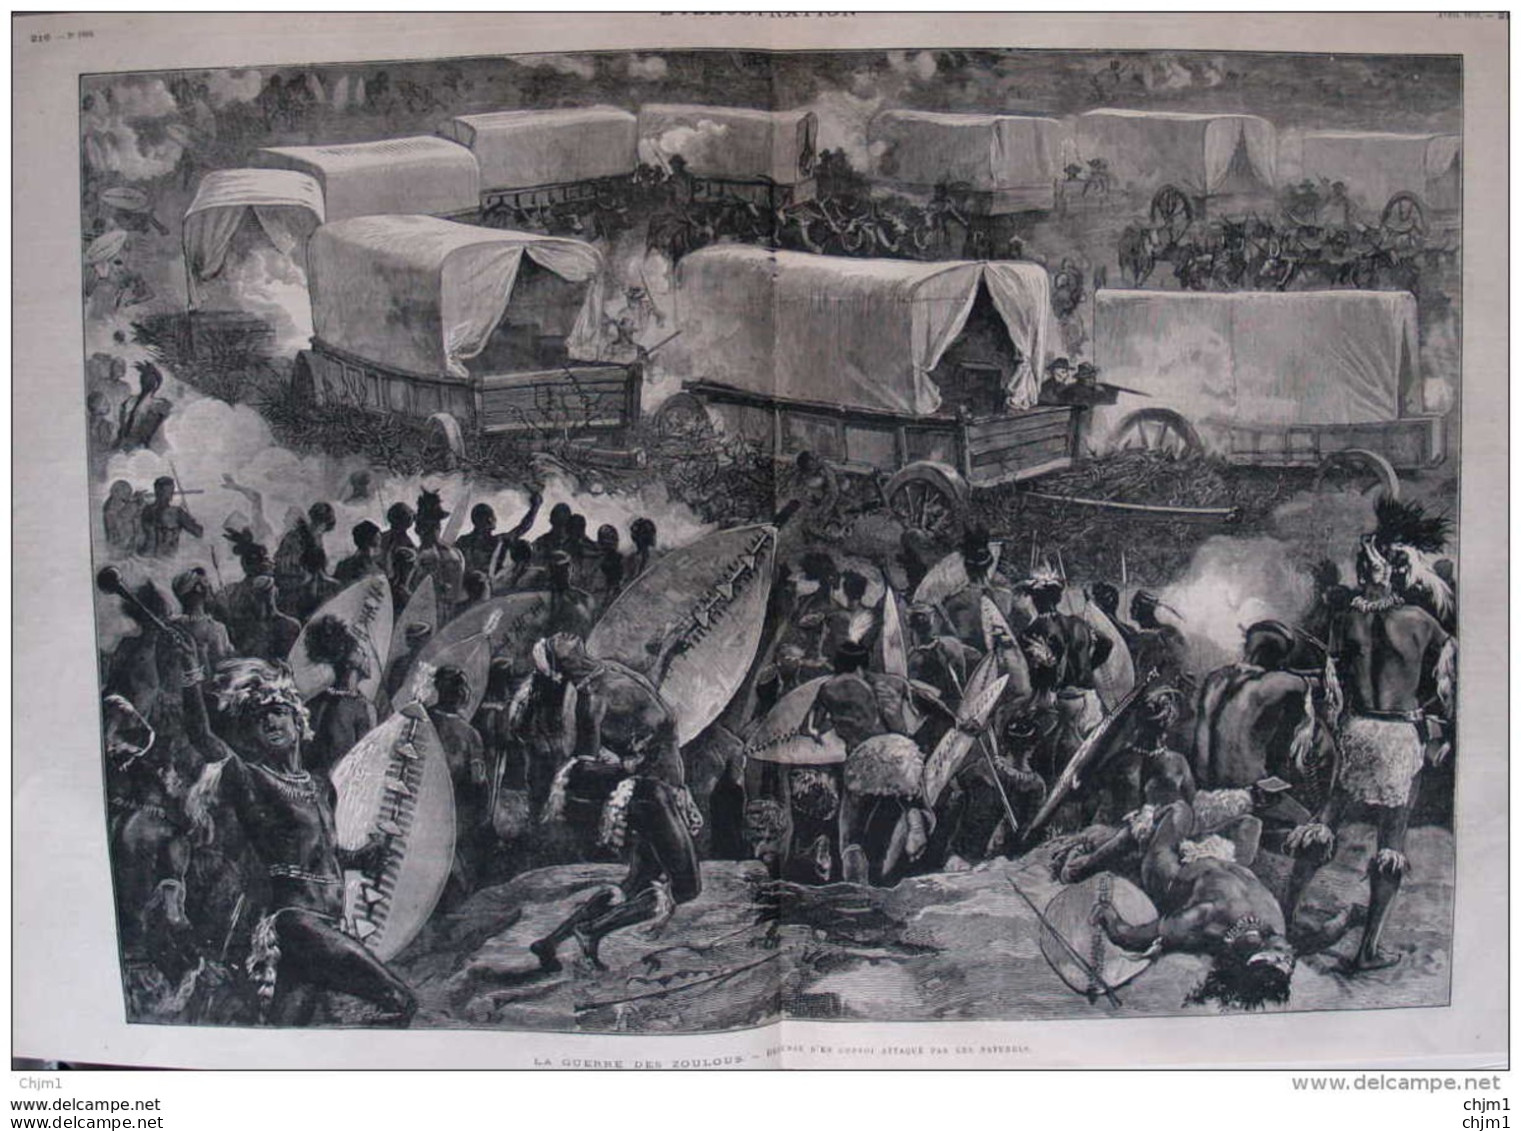 La Guerre Des Zoulous - Défense D'un Convoi Attaqué Par Les Naturels - Page Double Original 1879 - Historische Documenten